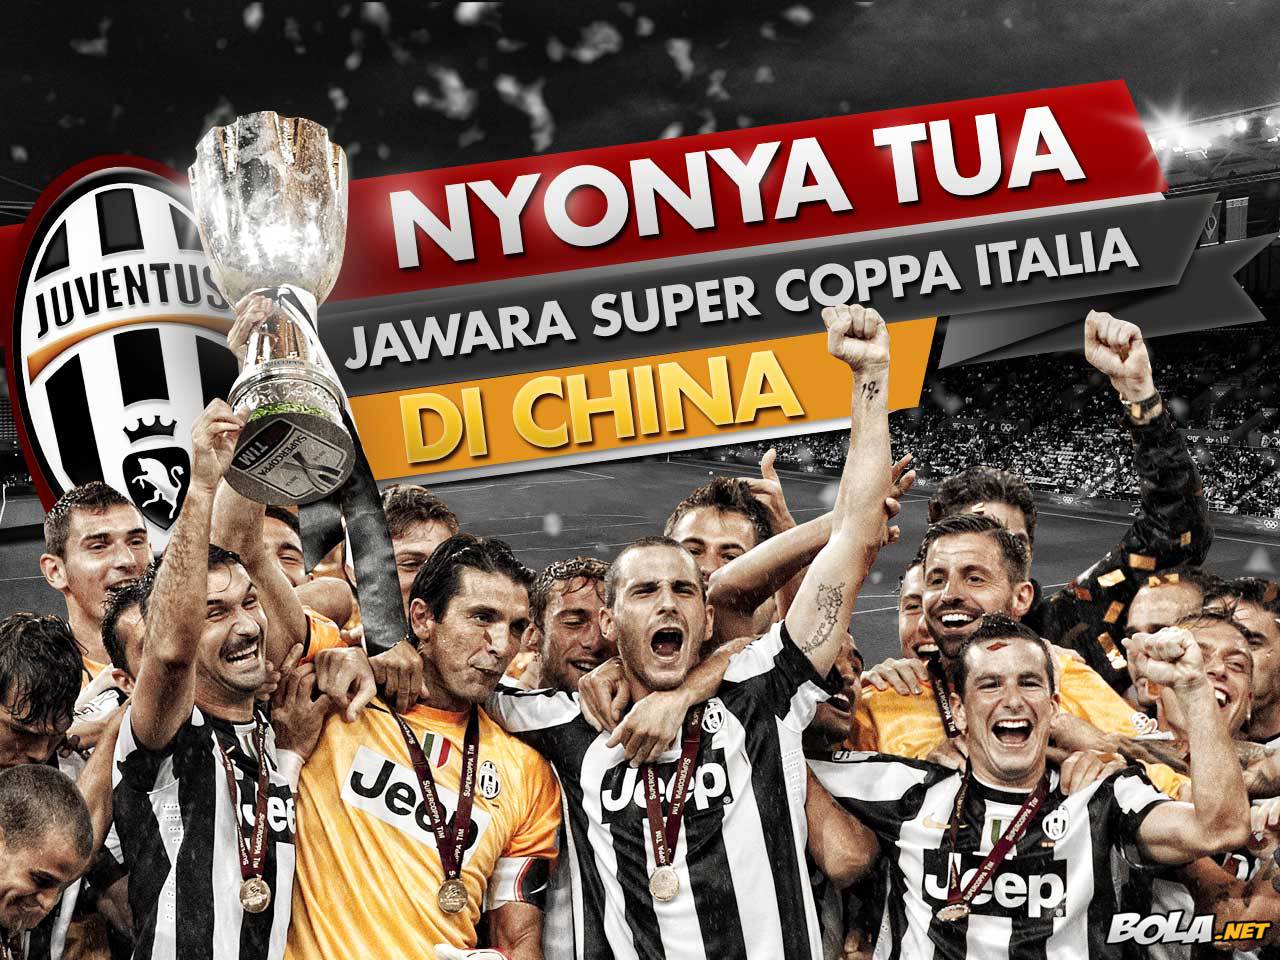 Download Wallpaper - Juventus Juara Super Coppa Itali 